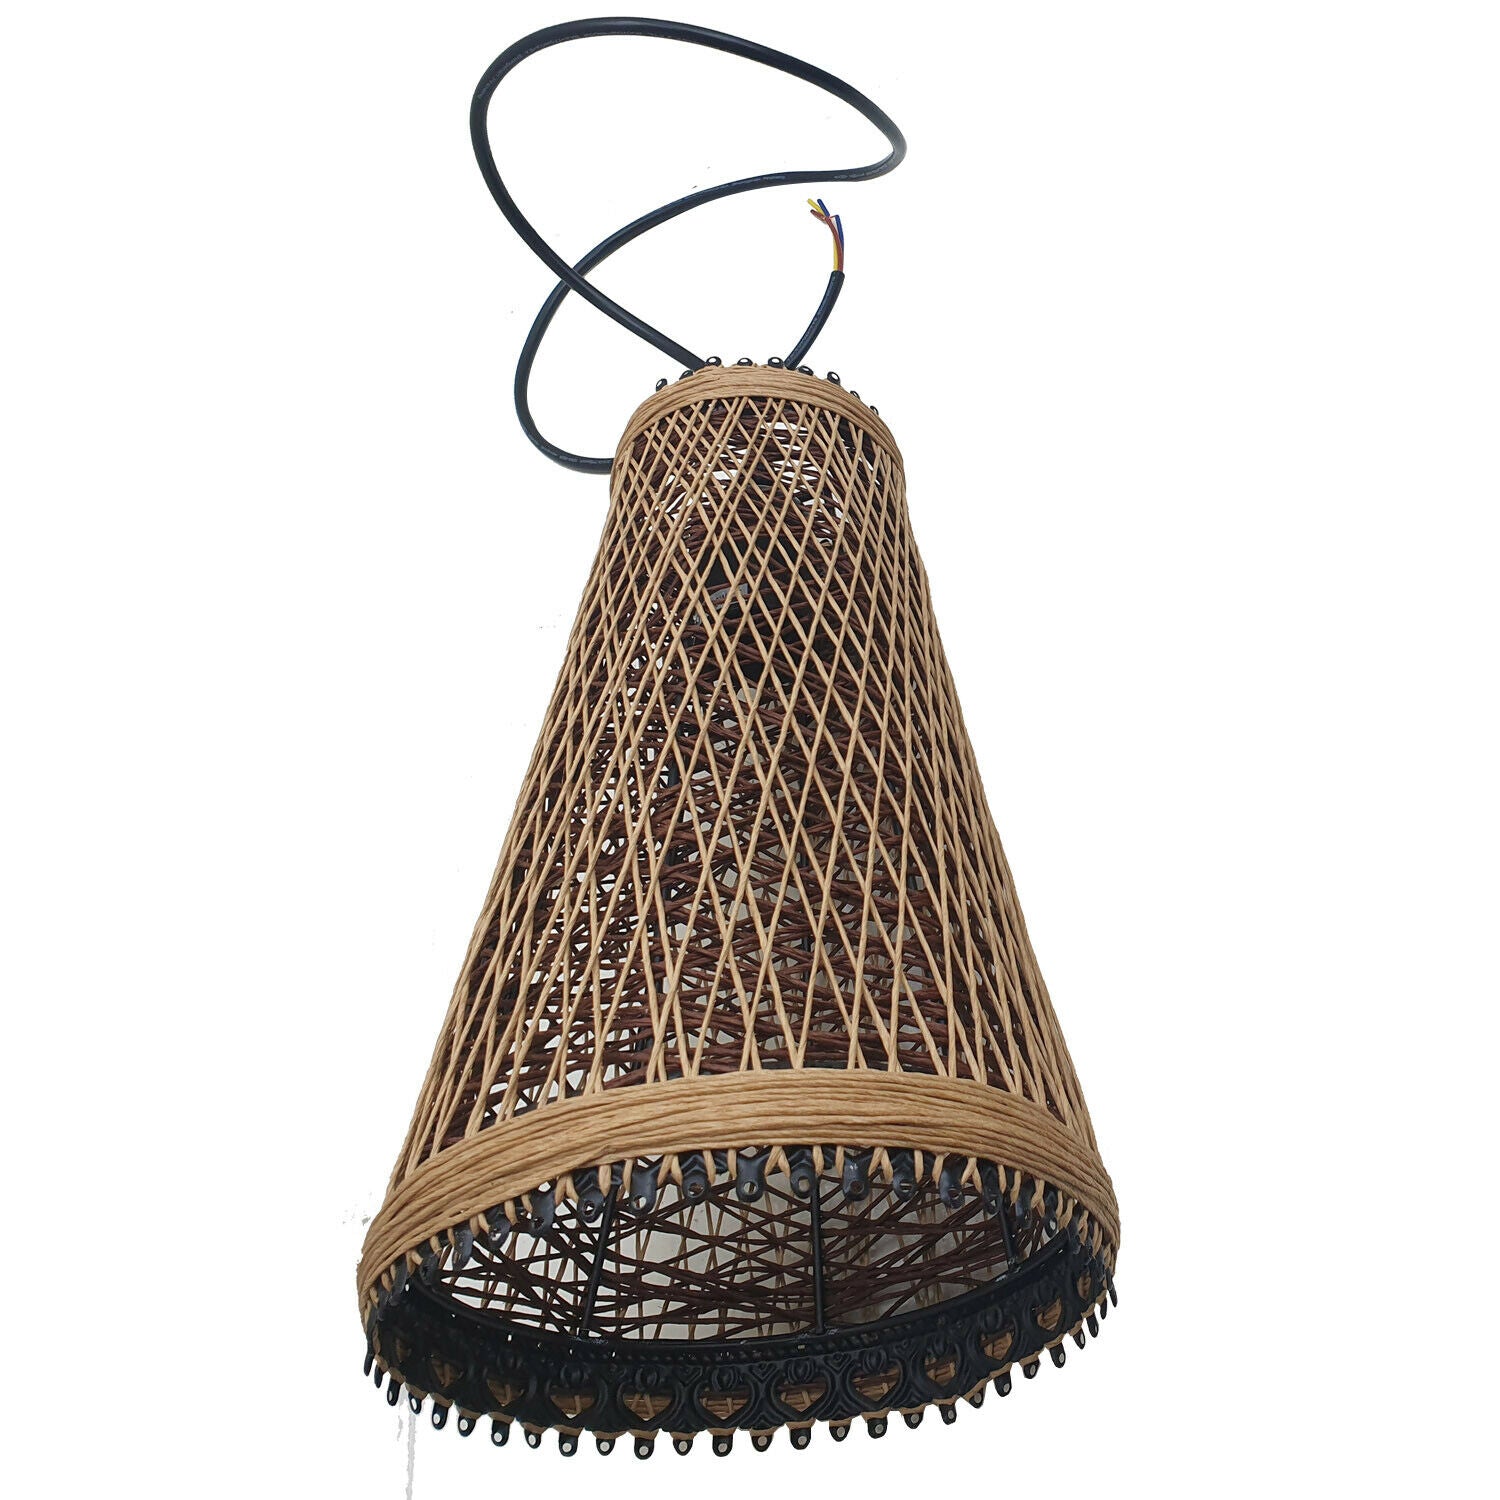 Modern Wicker Rattan Basket Style Ceiling Pendant Light Shade~1961 - LEDSone UK Ltd